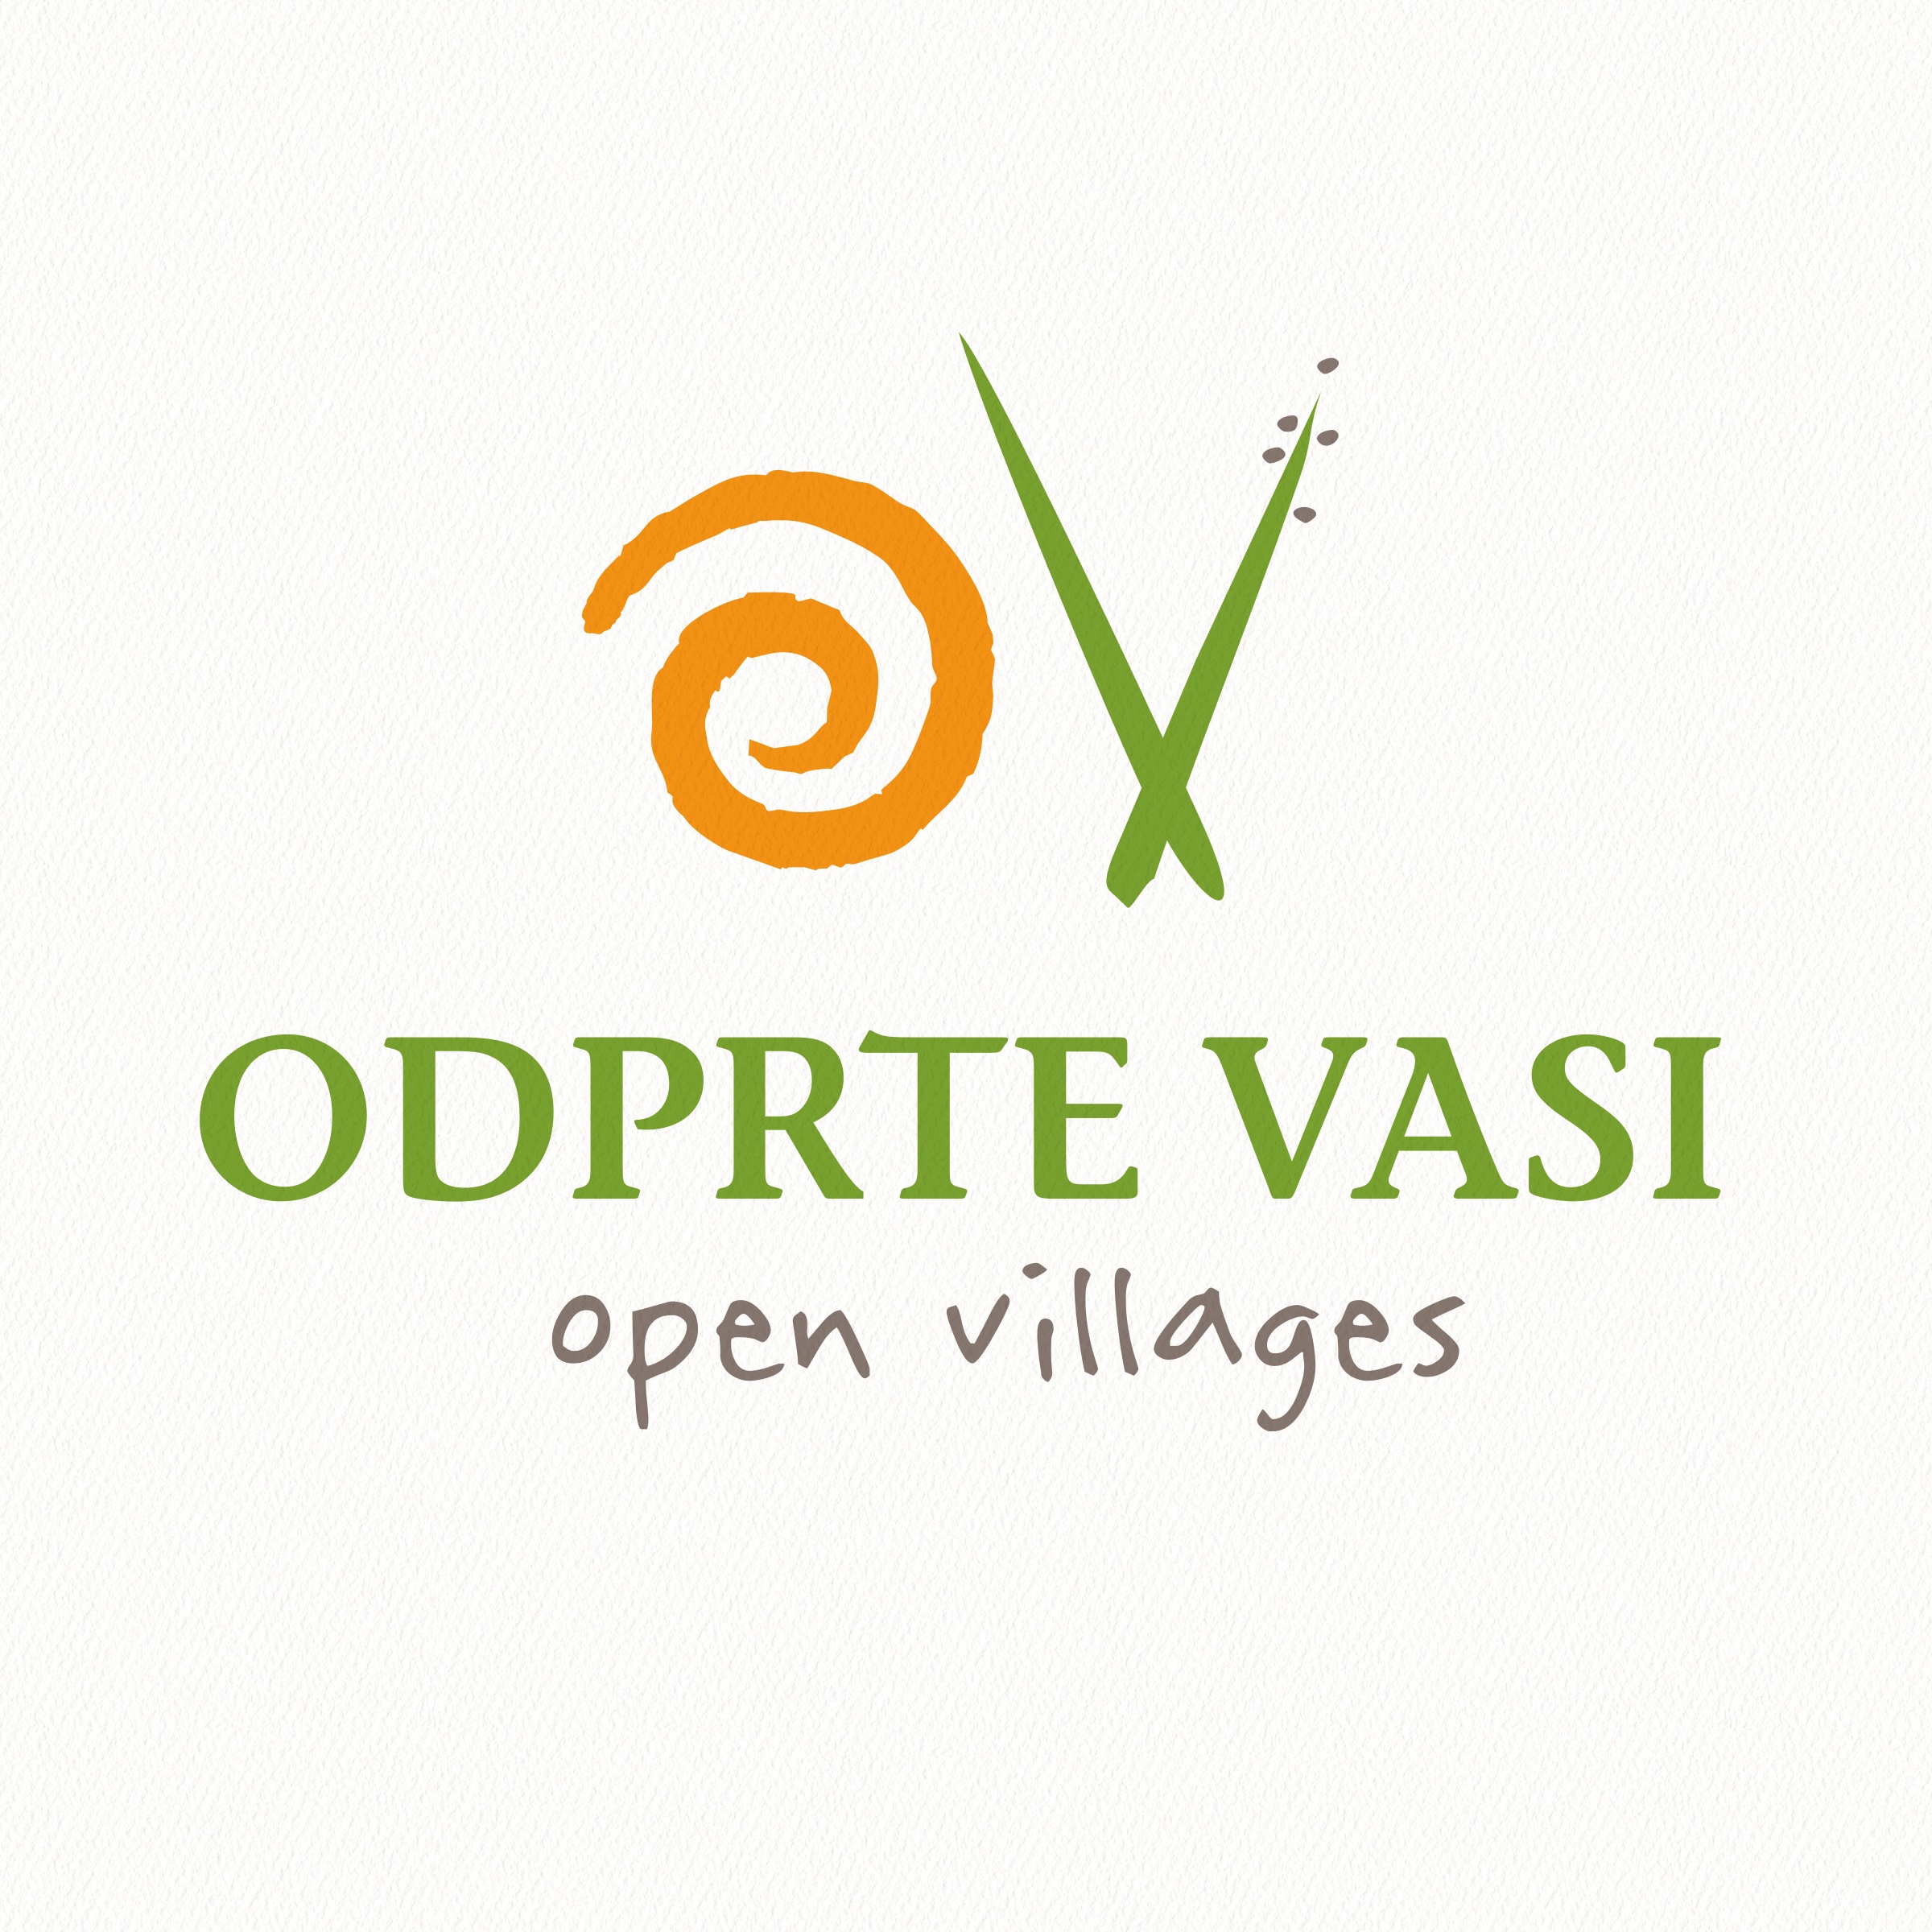 Odprte vasi